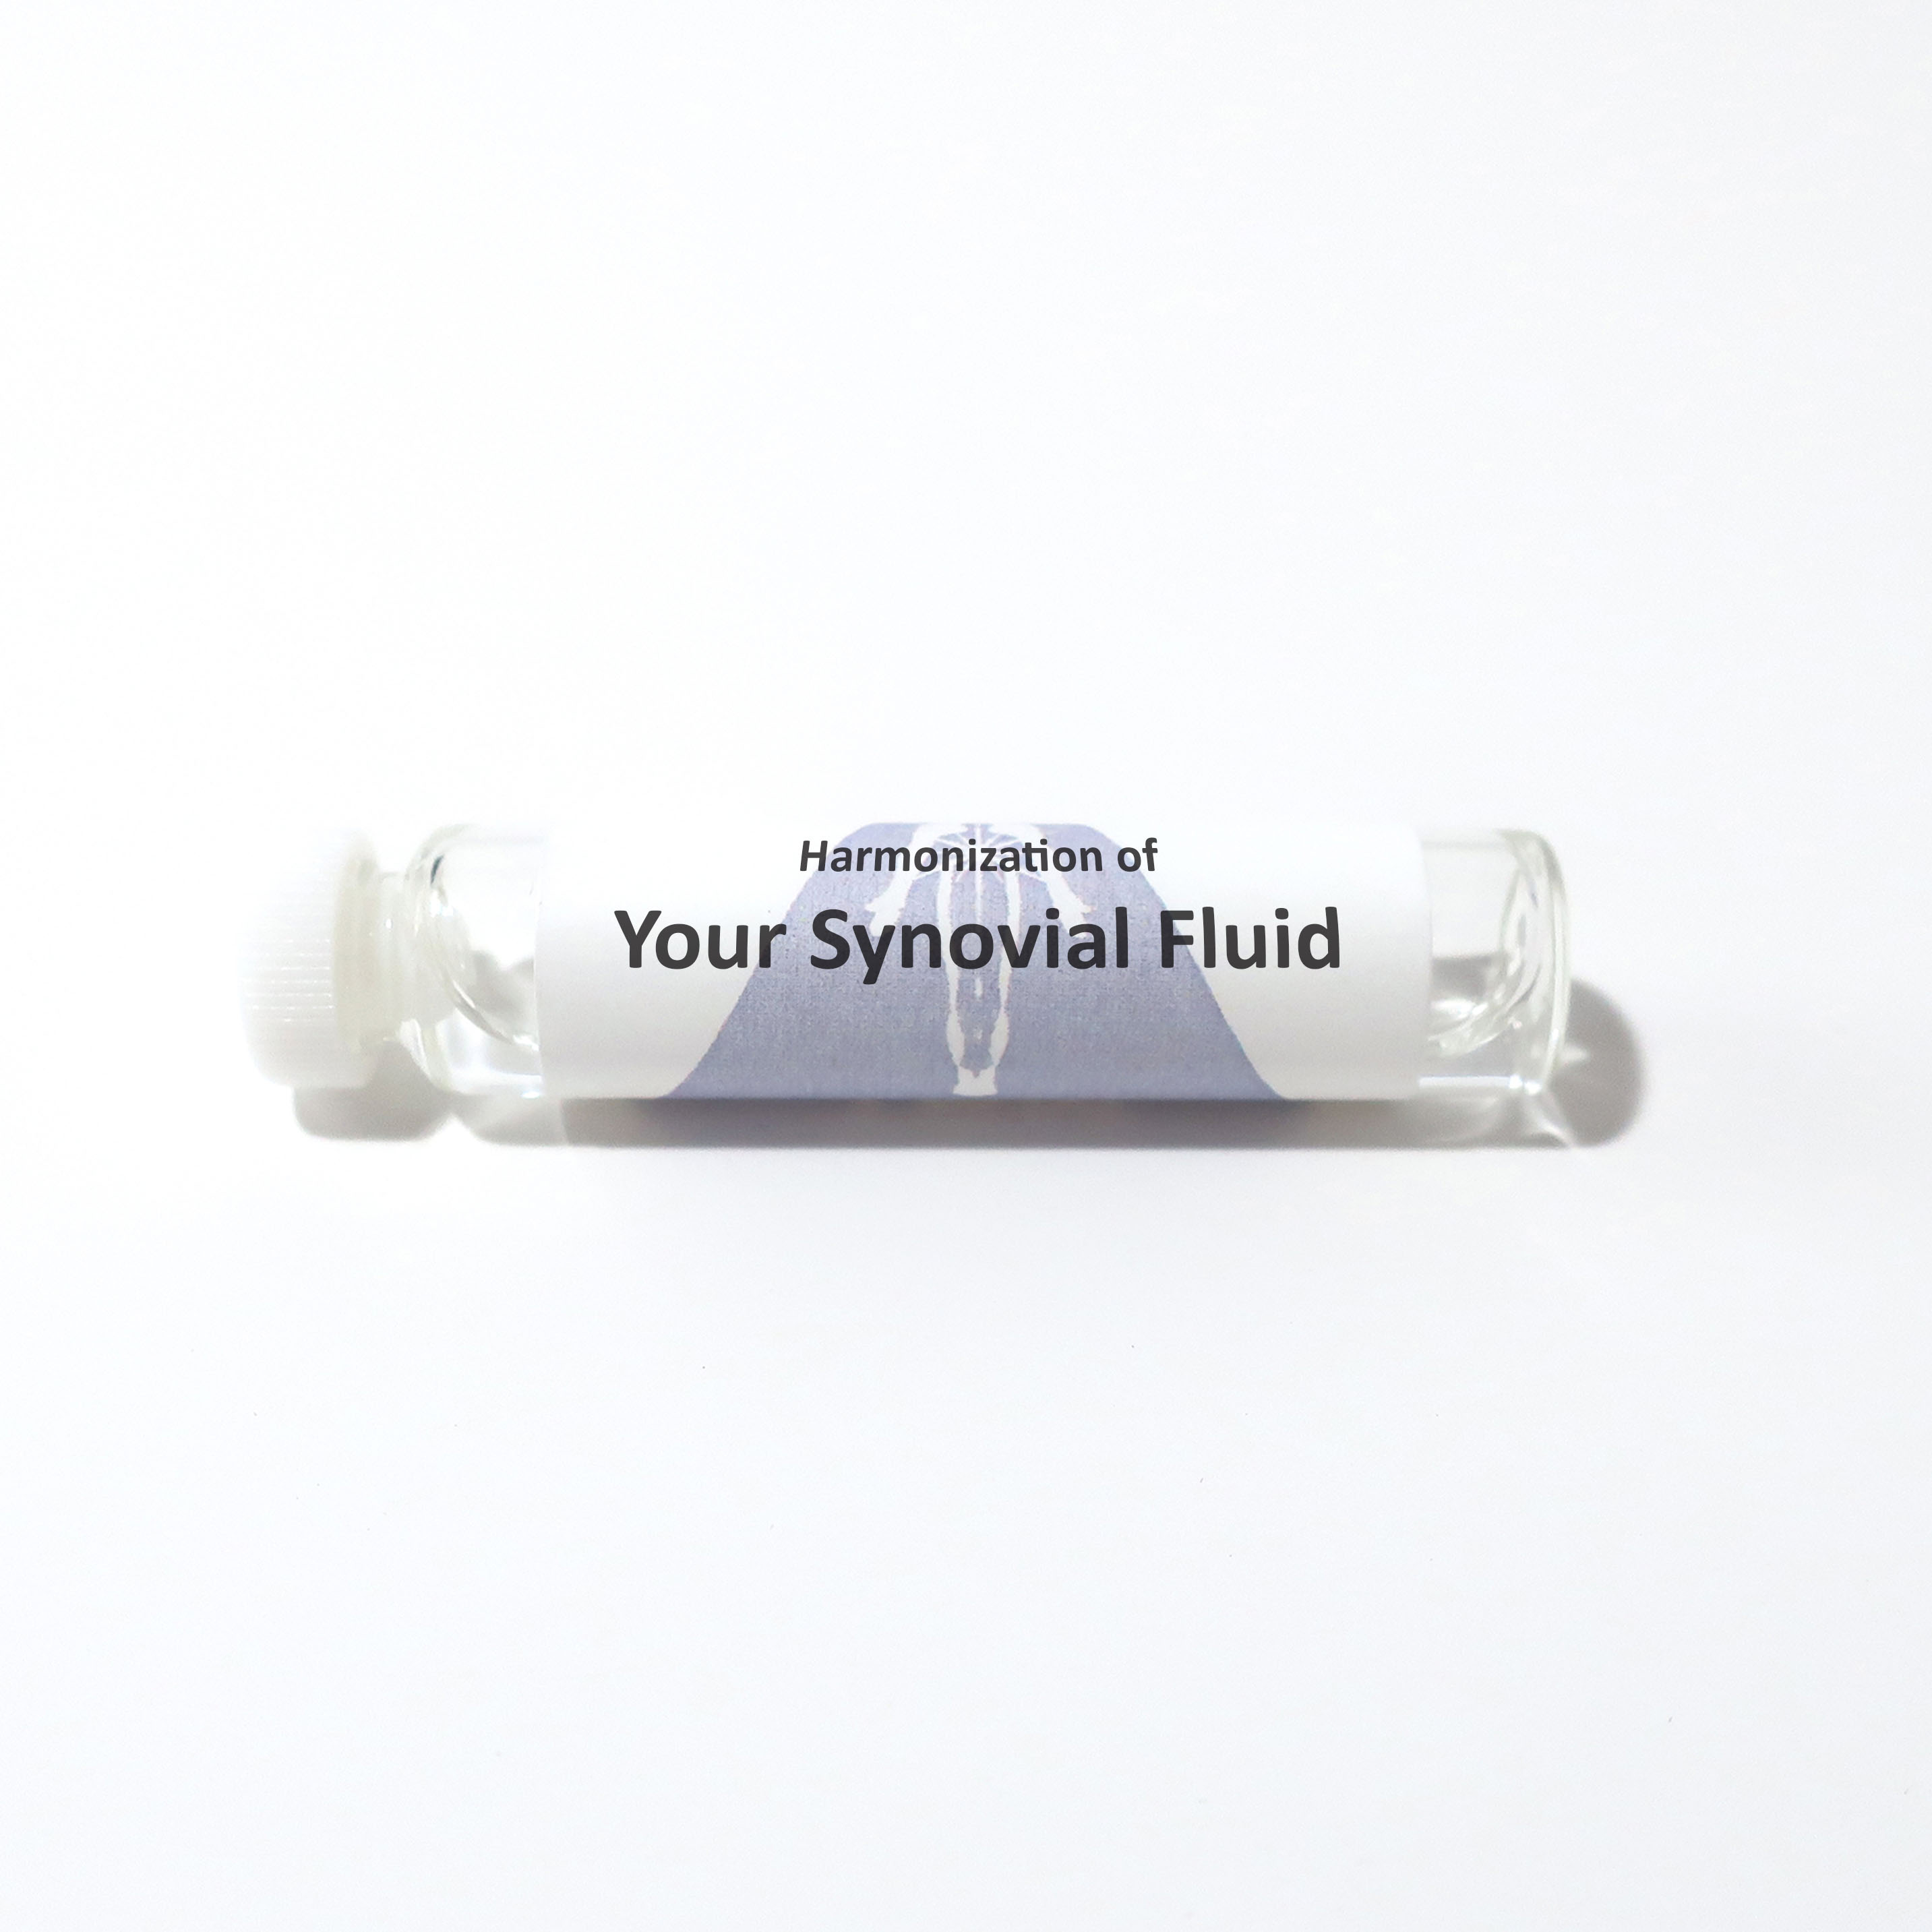 Your Synovial Fluid